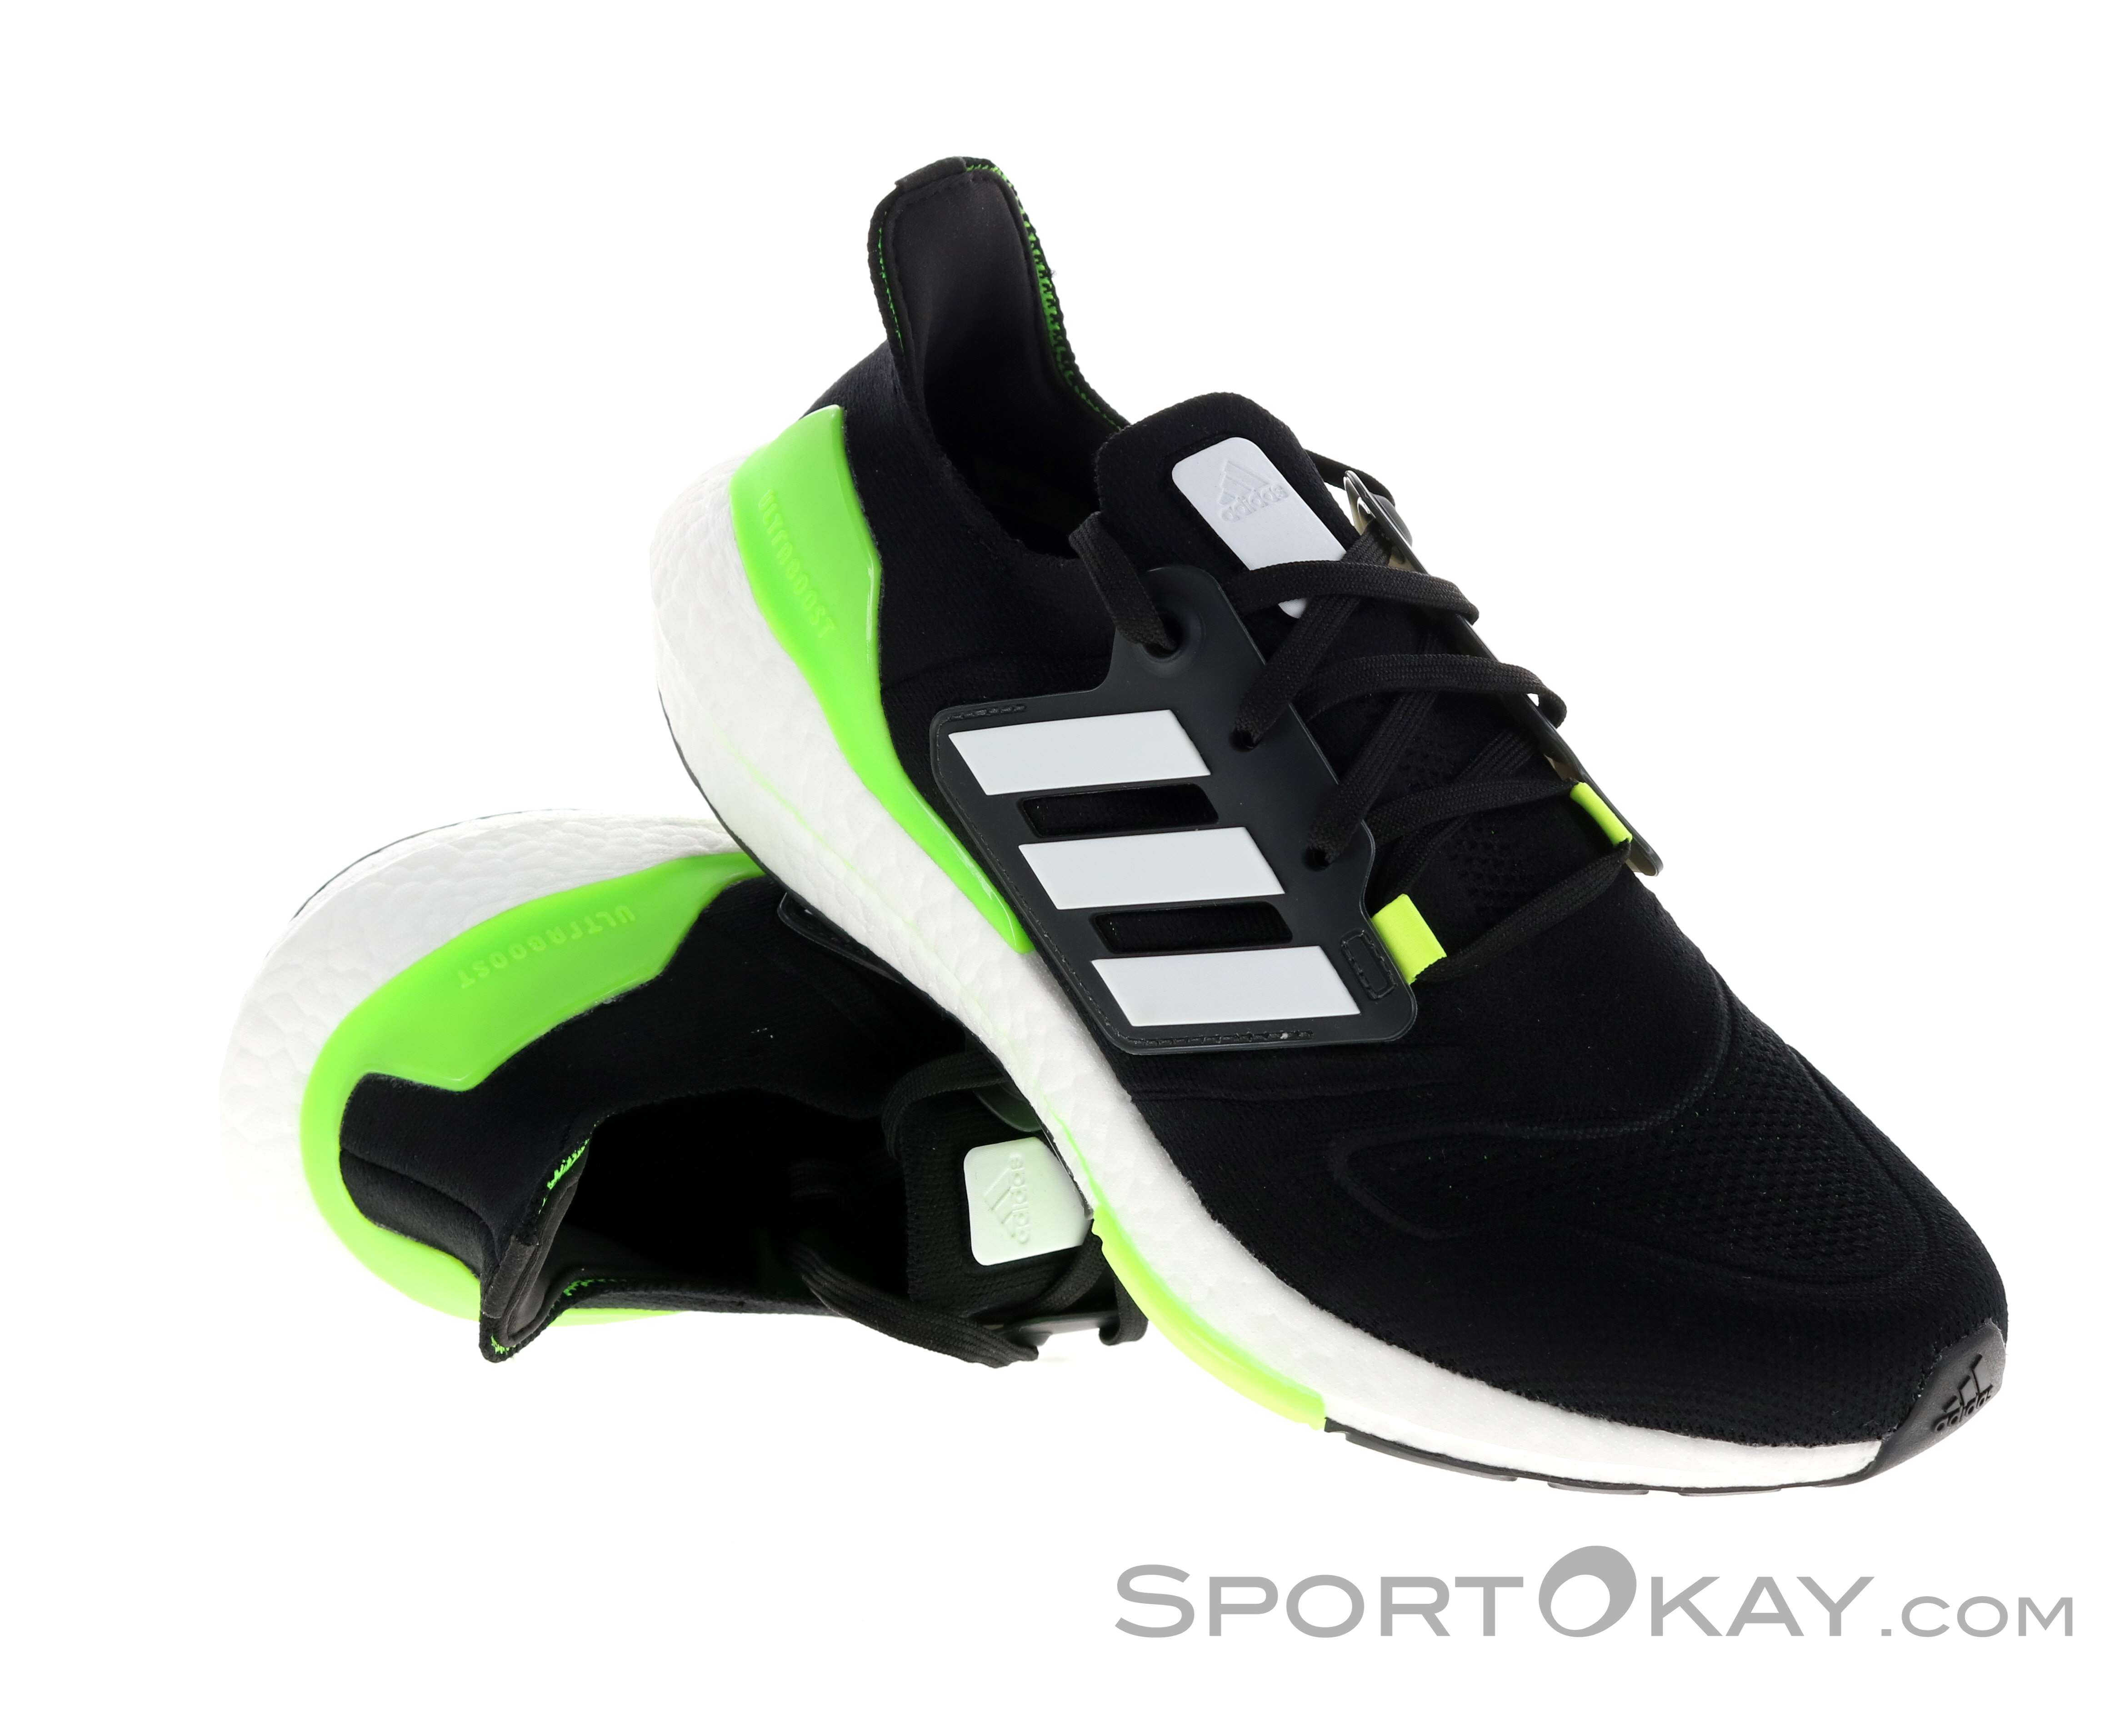 Chaussures Running adidas running UltraBoost 22 Noir Vert Homme